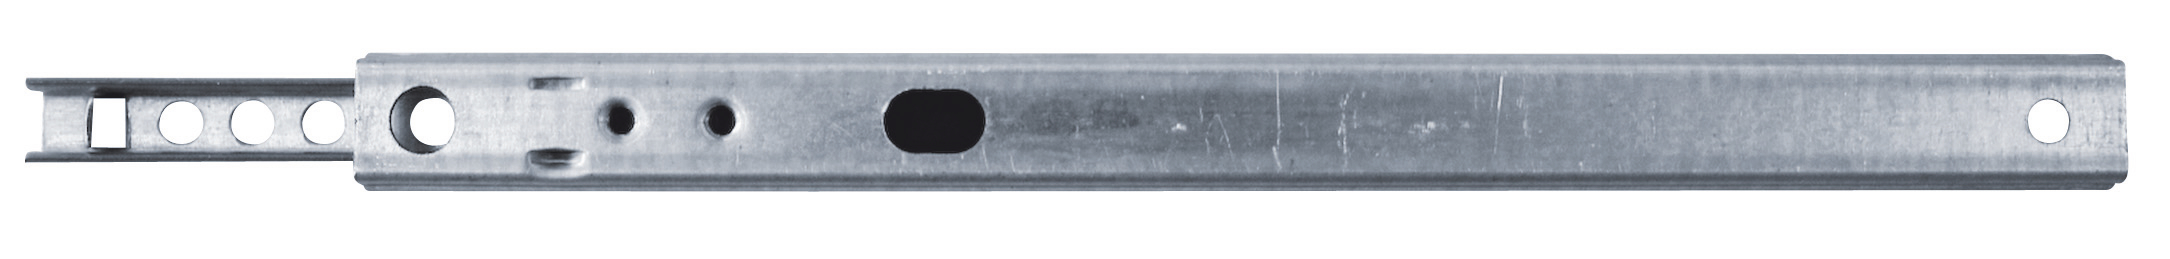 HSI Schubladenführung vern. 17x214/156 mm Kugel-Teilauszug, lose mit EAN